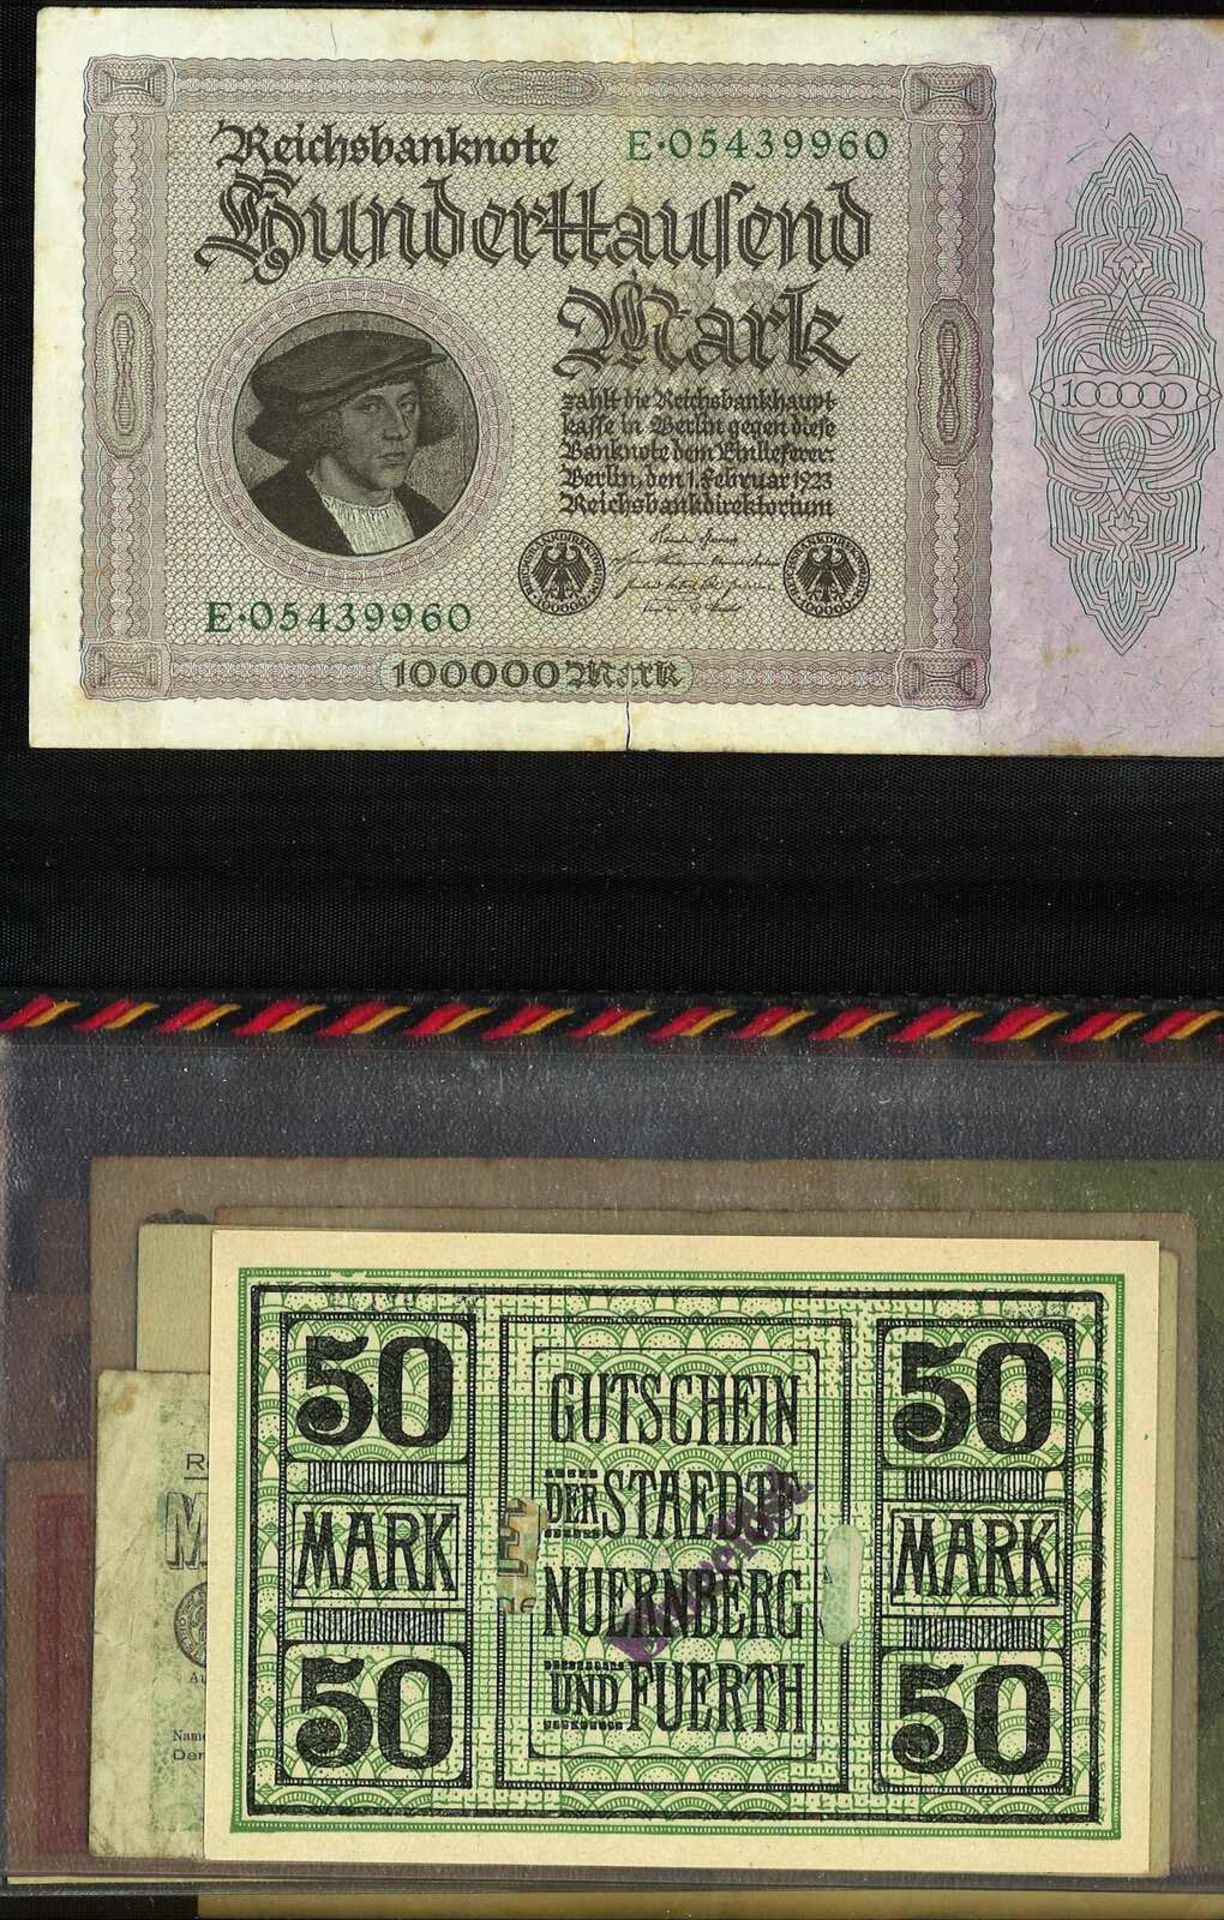 Lot Banknoten in der Mappe, meist Deutschland. 25 Scheine, verschiedene Erhaltungen.Lot of banknote